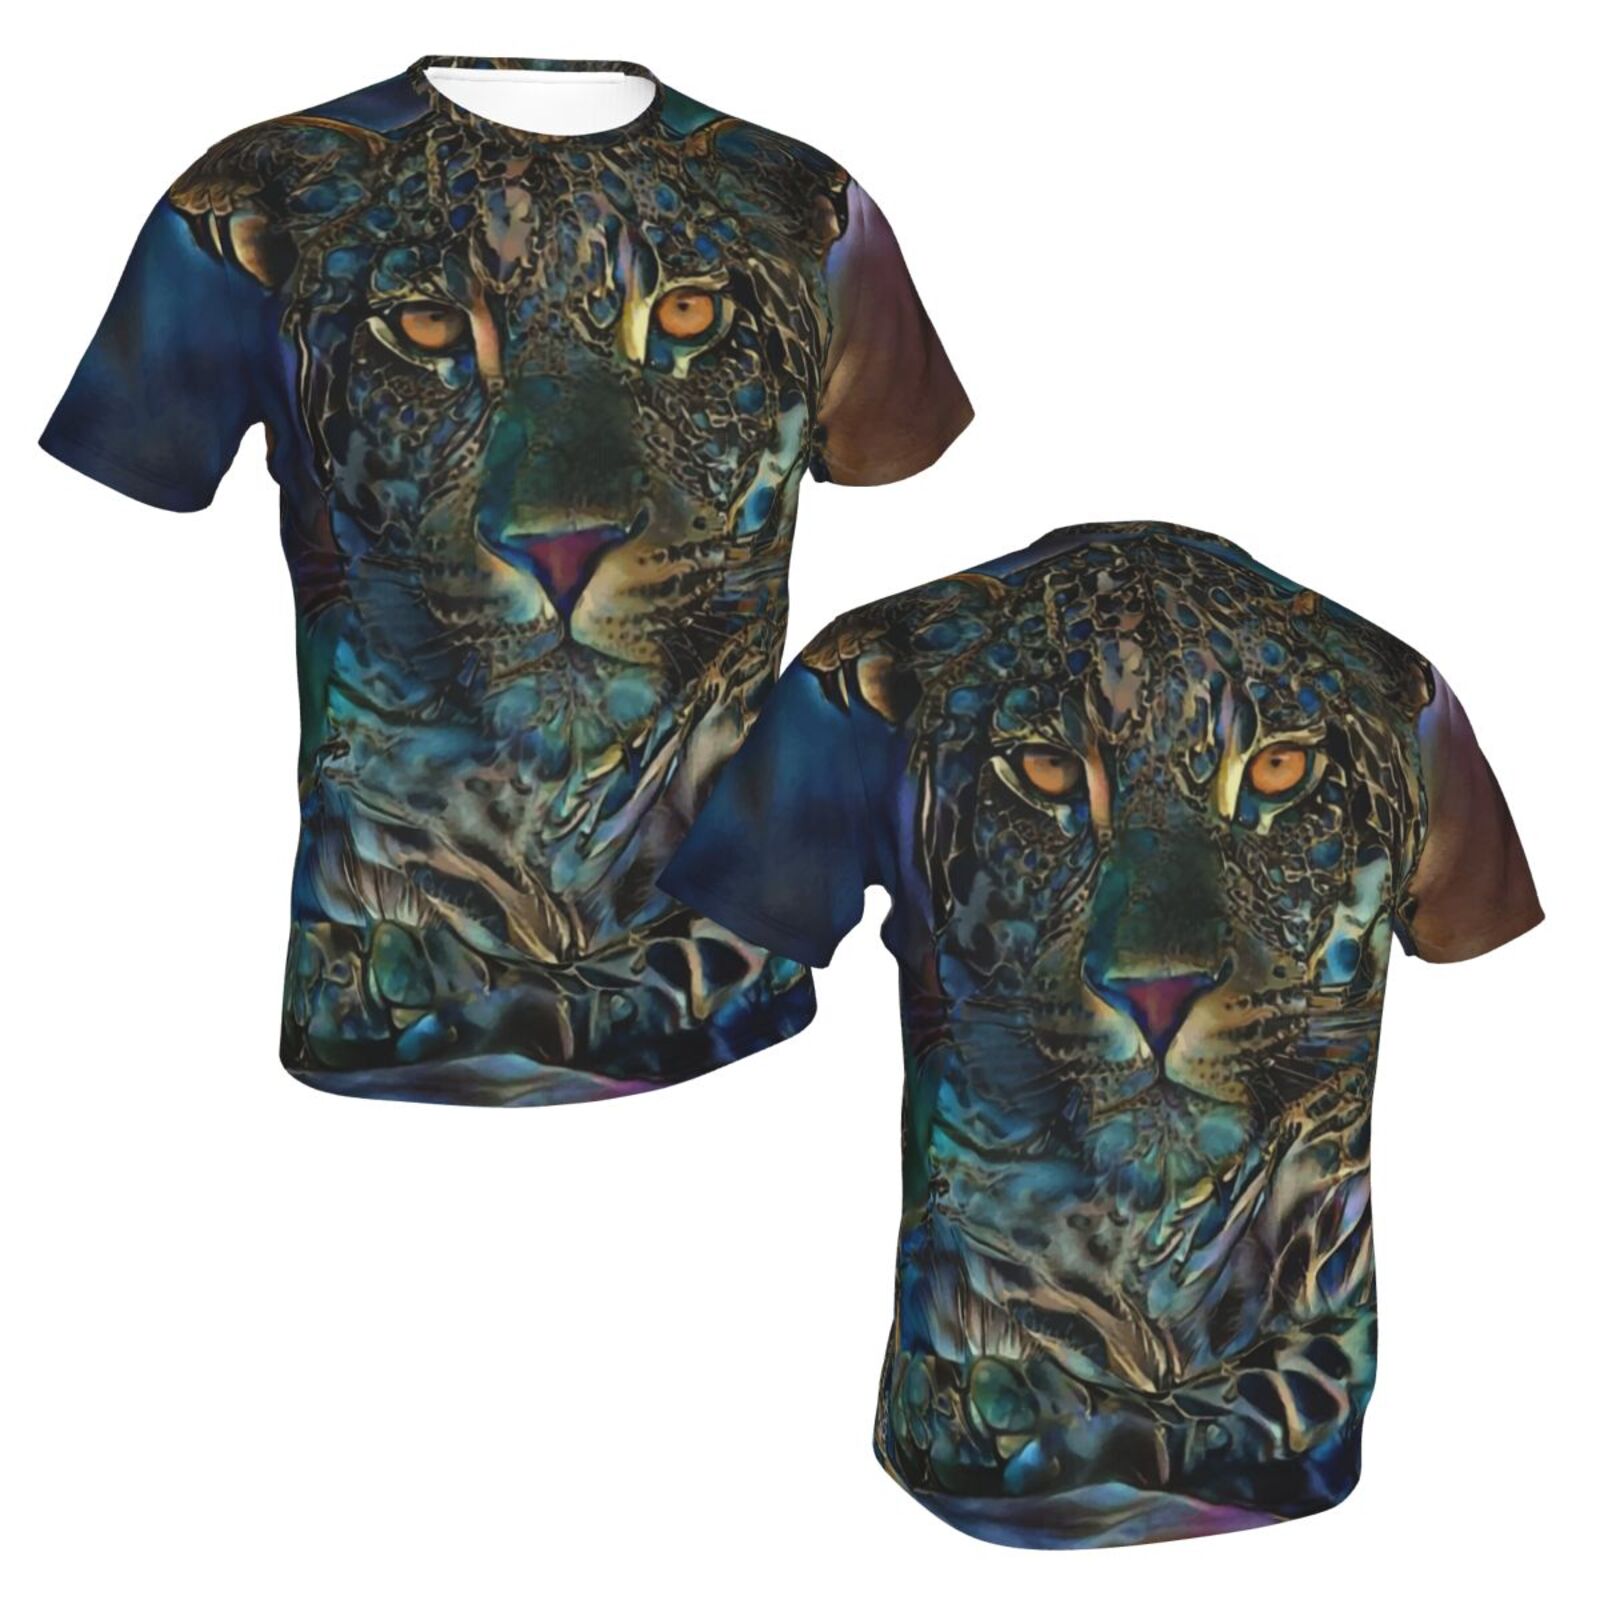 Laria Leopard Blandet Medieelementer Klassisk T-shirt